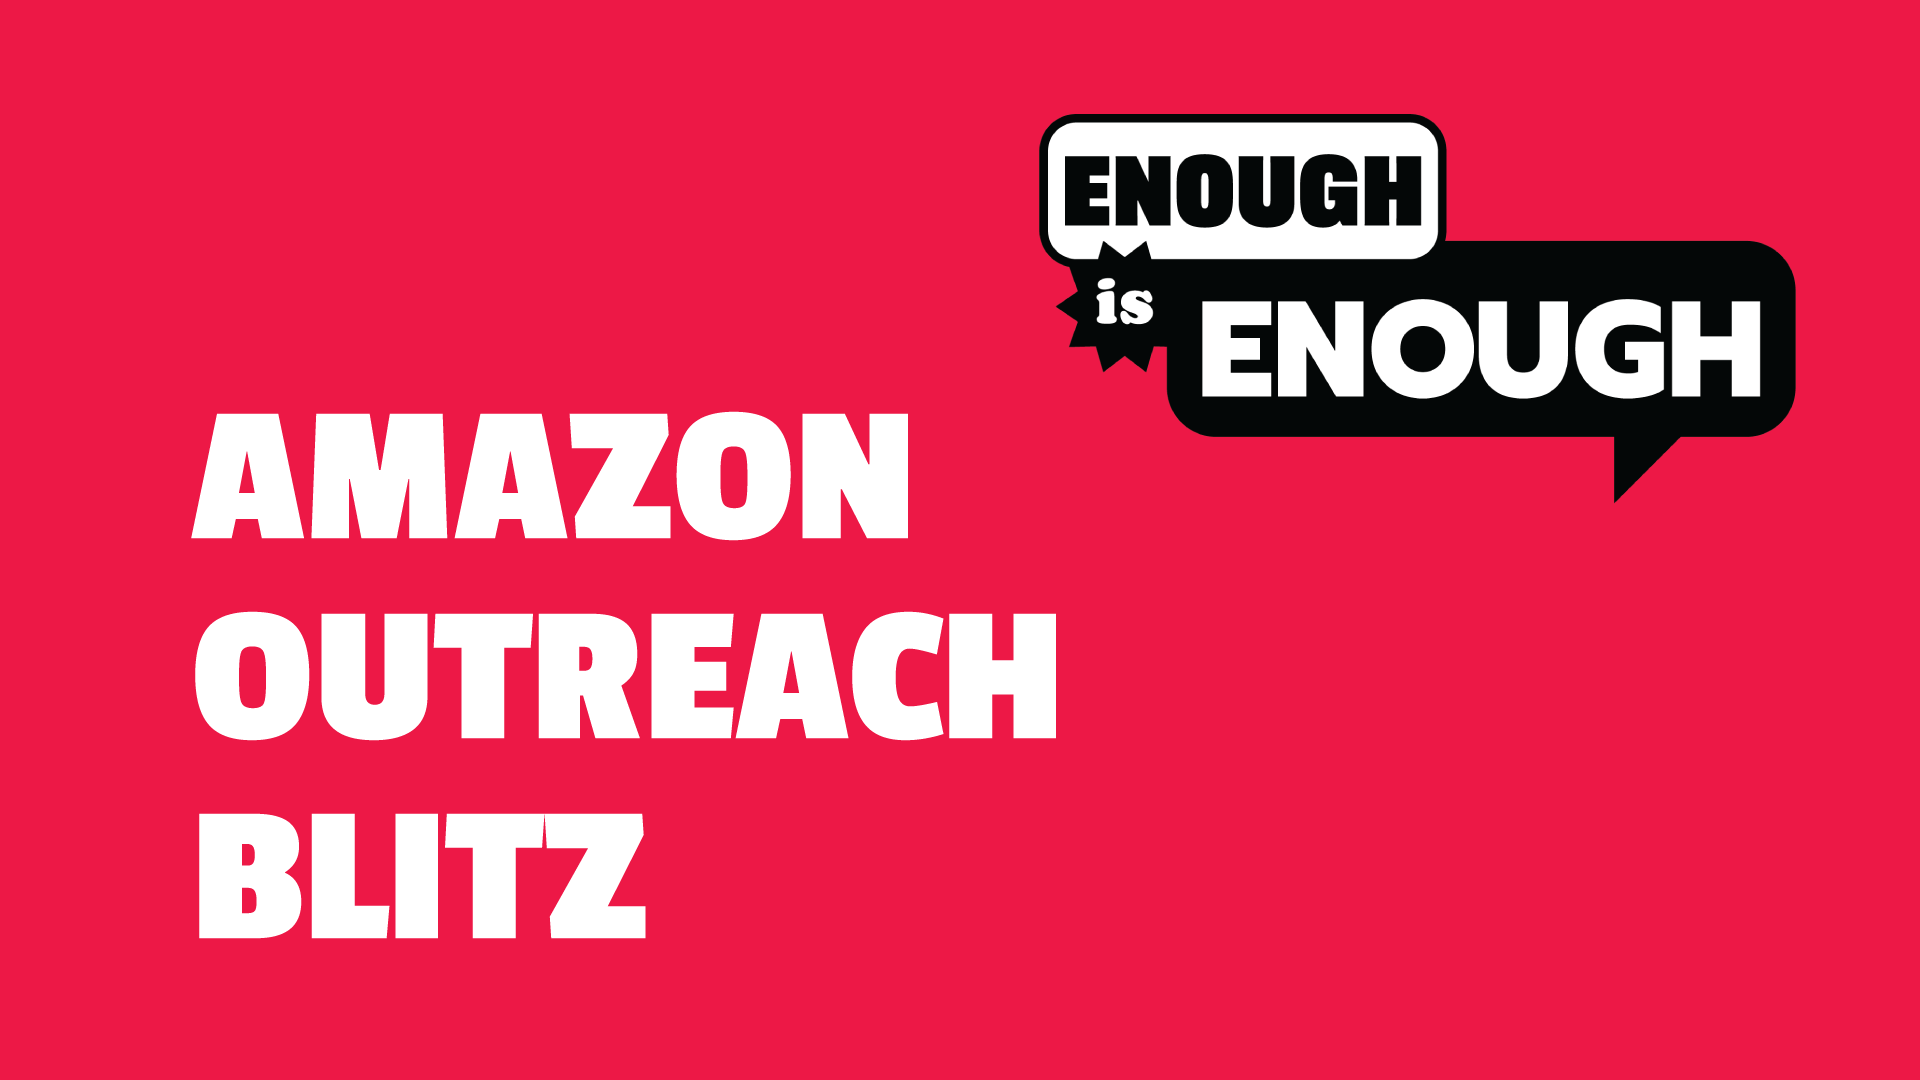 Amazon Outreach Blitz | The Ontario Federation of Labour